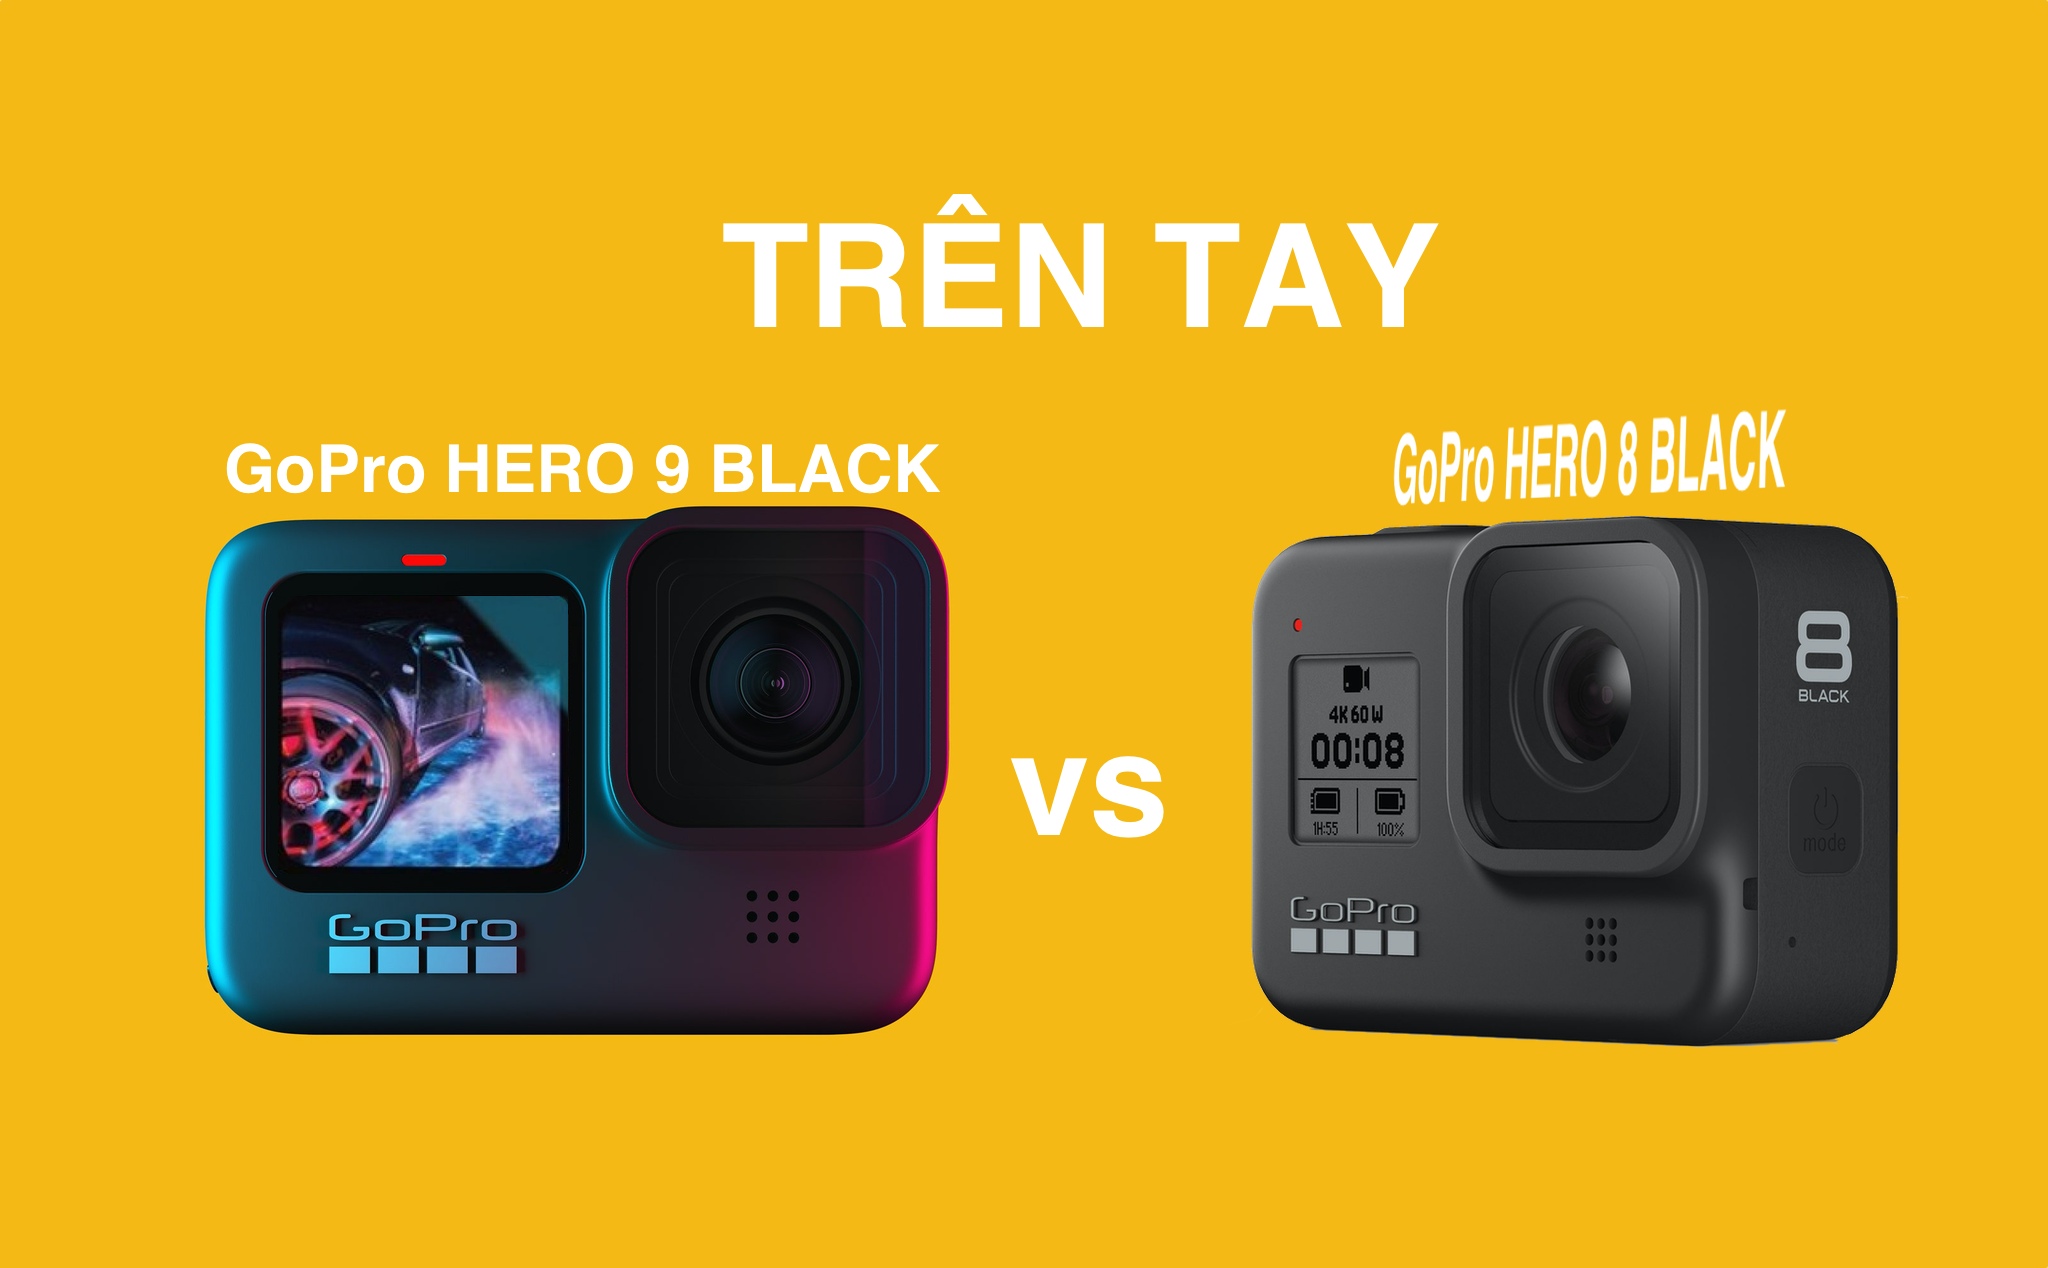 Trên tay camera hành trình GoPro Hero 9 Black, so sánh video với GoPro Hero 8 Black